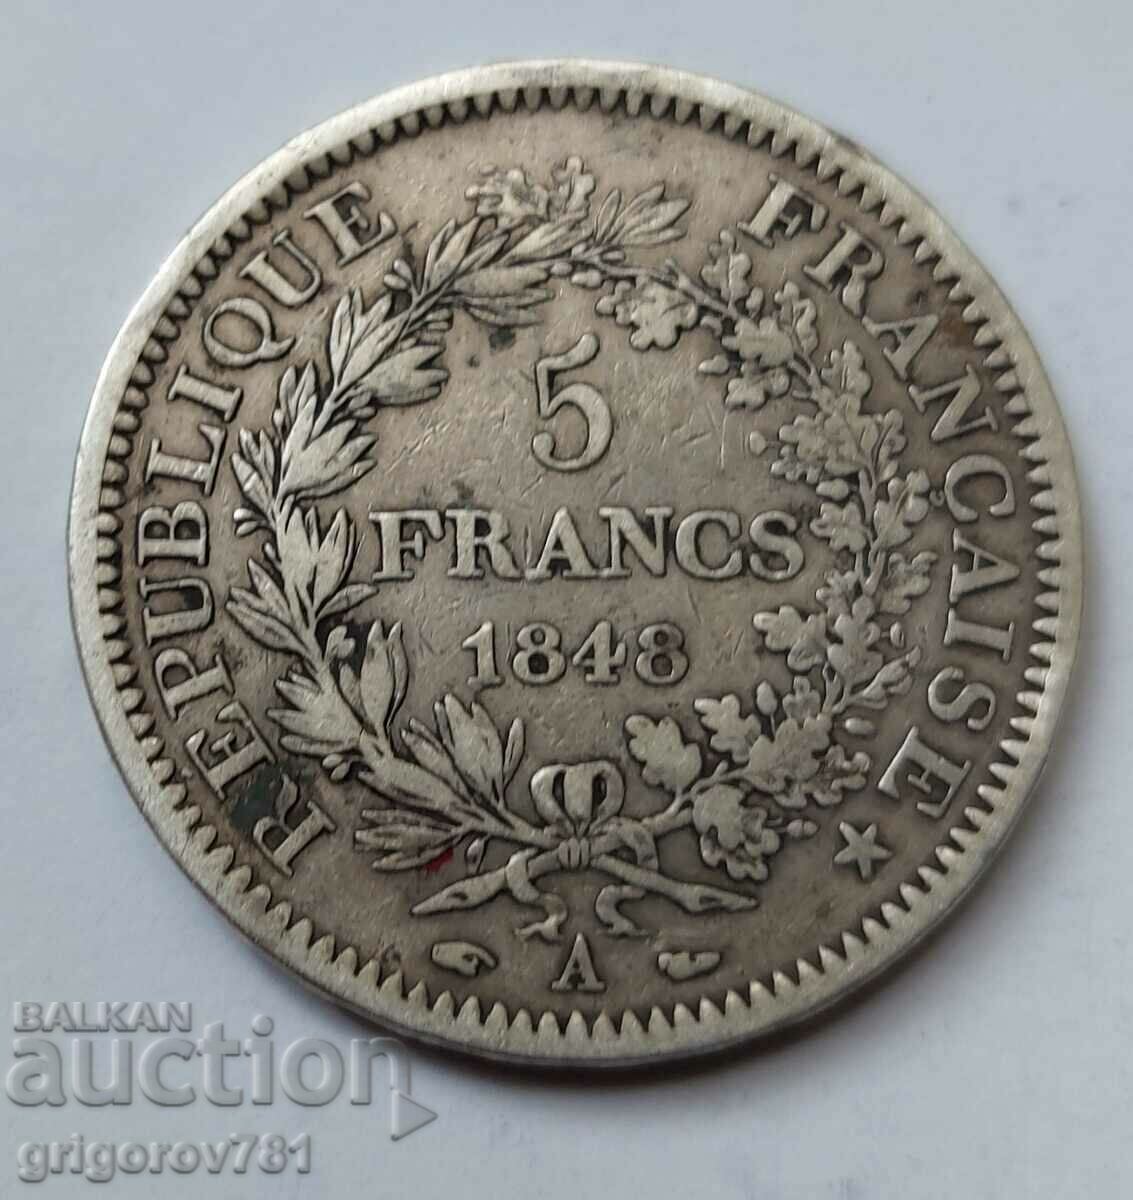 5 Franci Argint Franta 1848 A - Moneda de argint #247